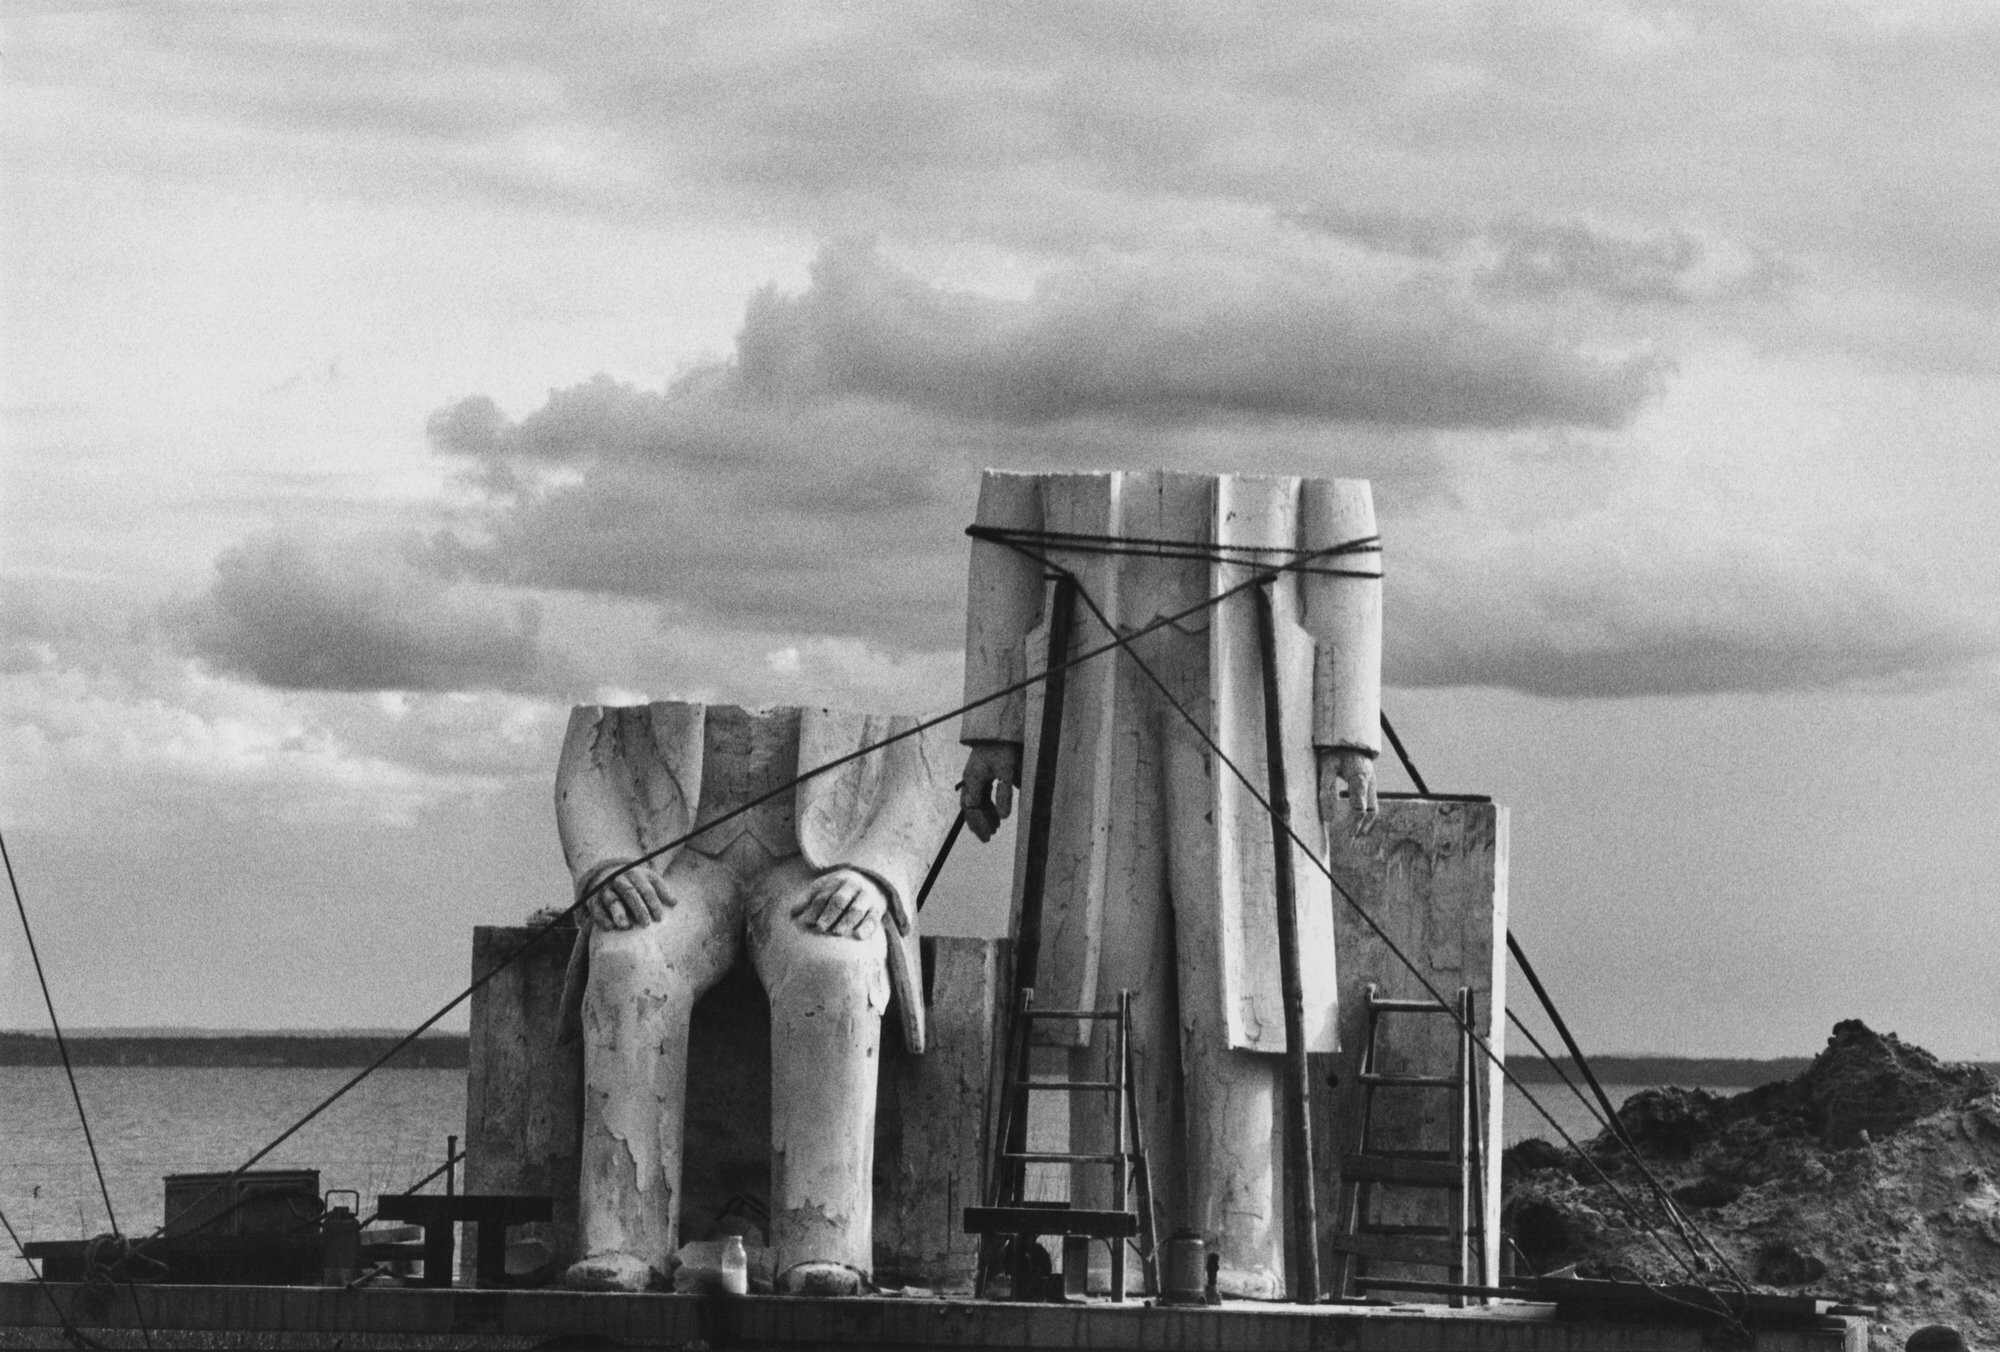 Маркс-Энгельс монумент, ГДР, 1984 год. Фотограф Сибилла Бергеман